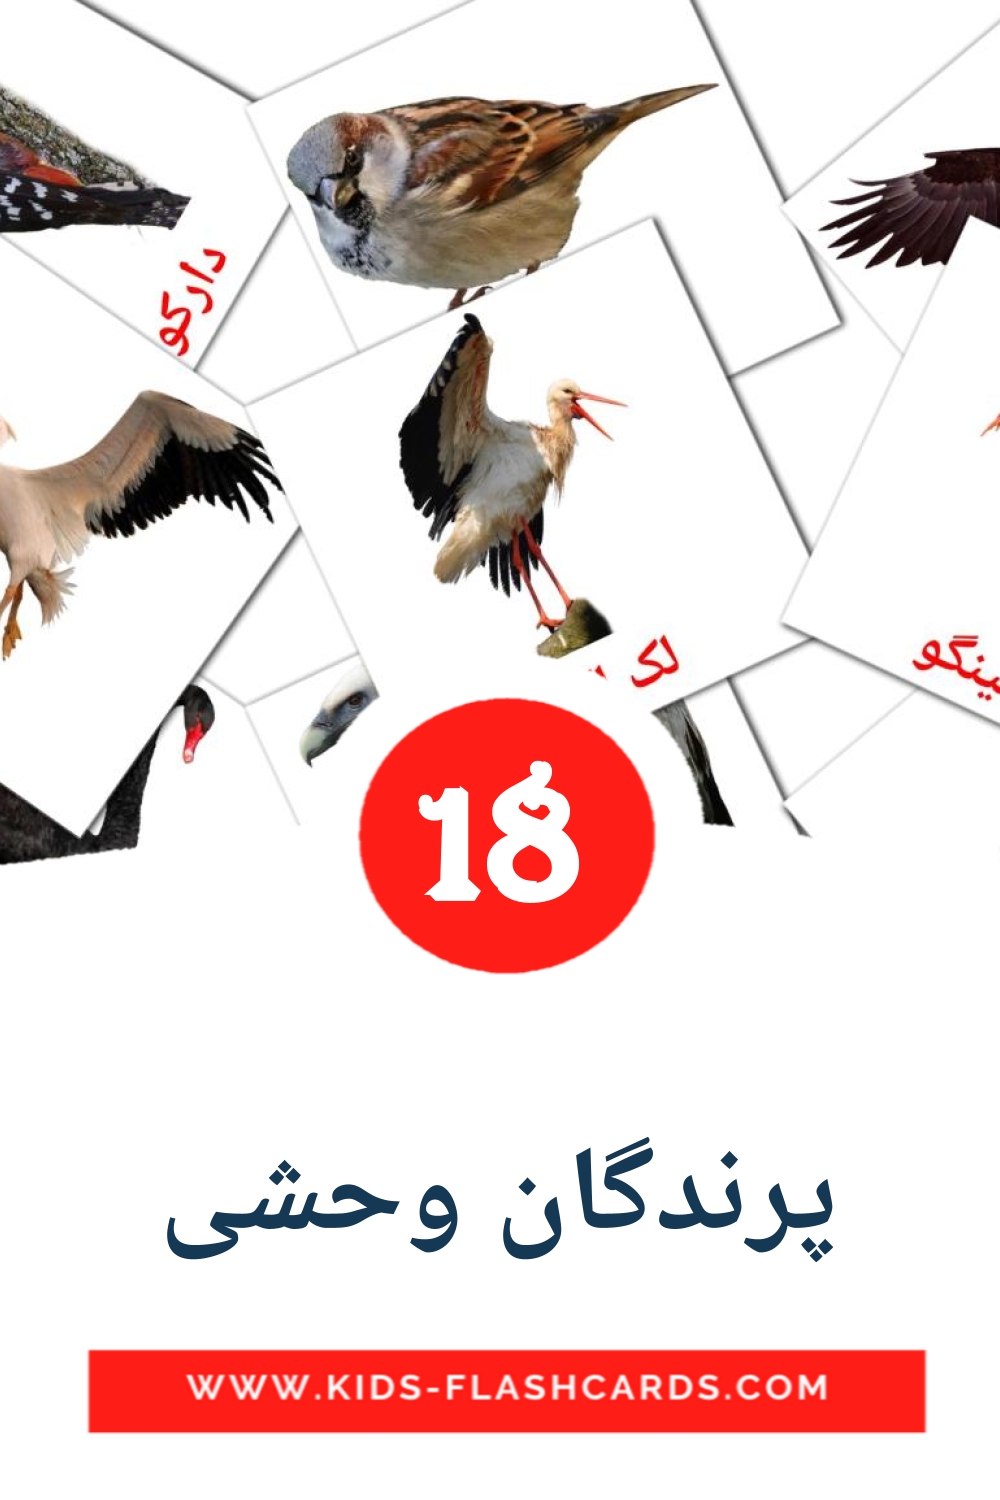 18 tarjetas didacticas de پرندگان وحشی para el jardín de infancia en persa